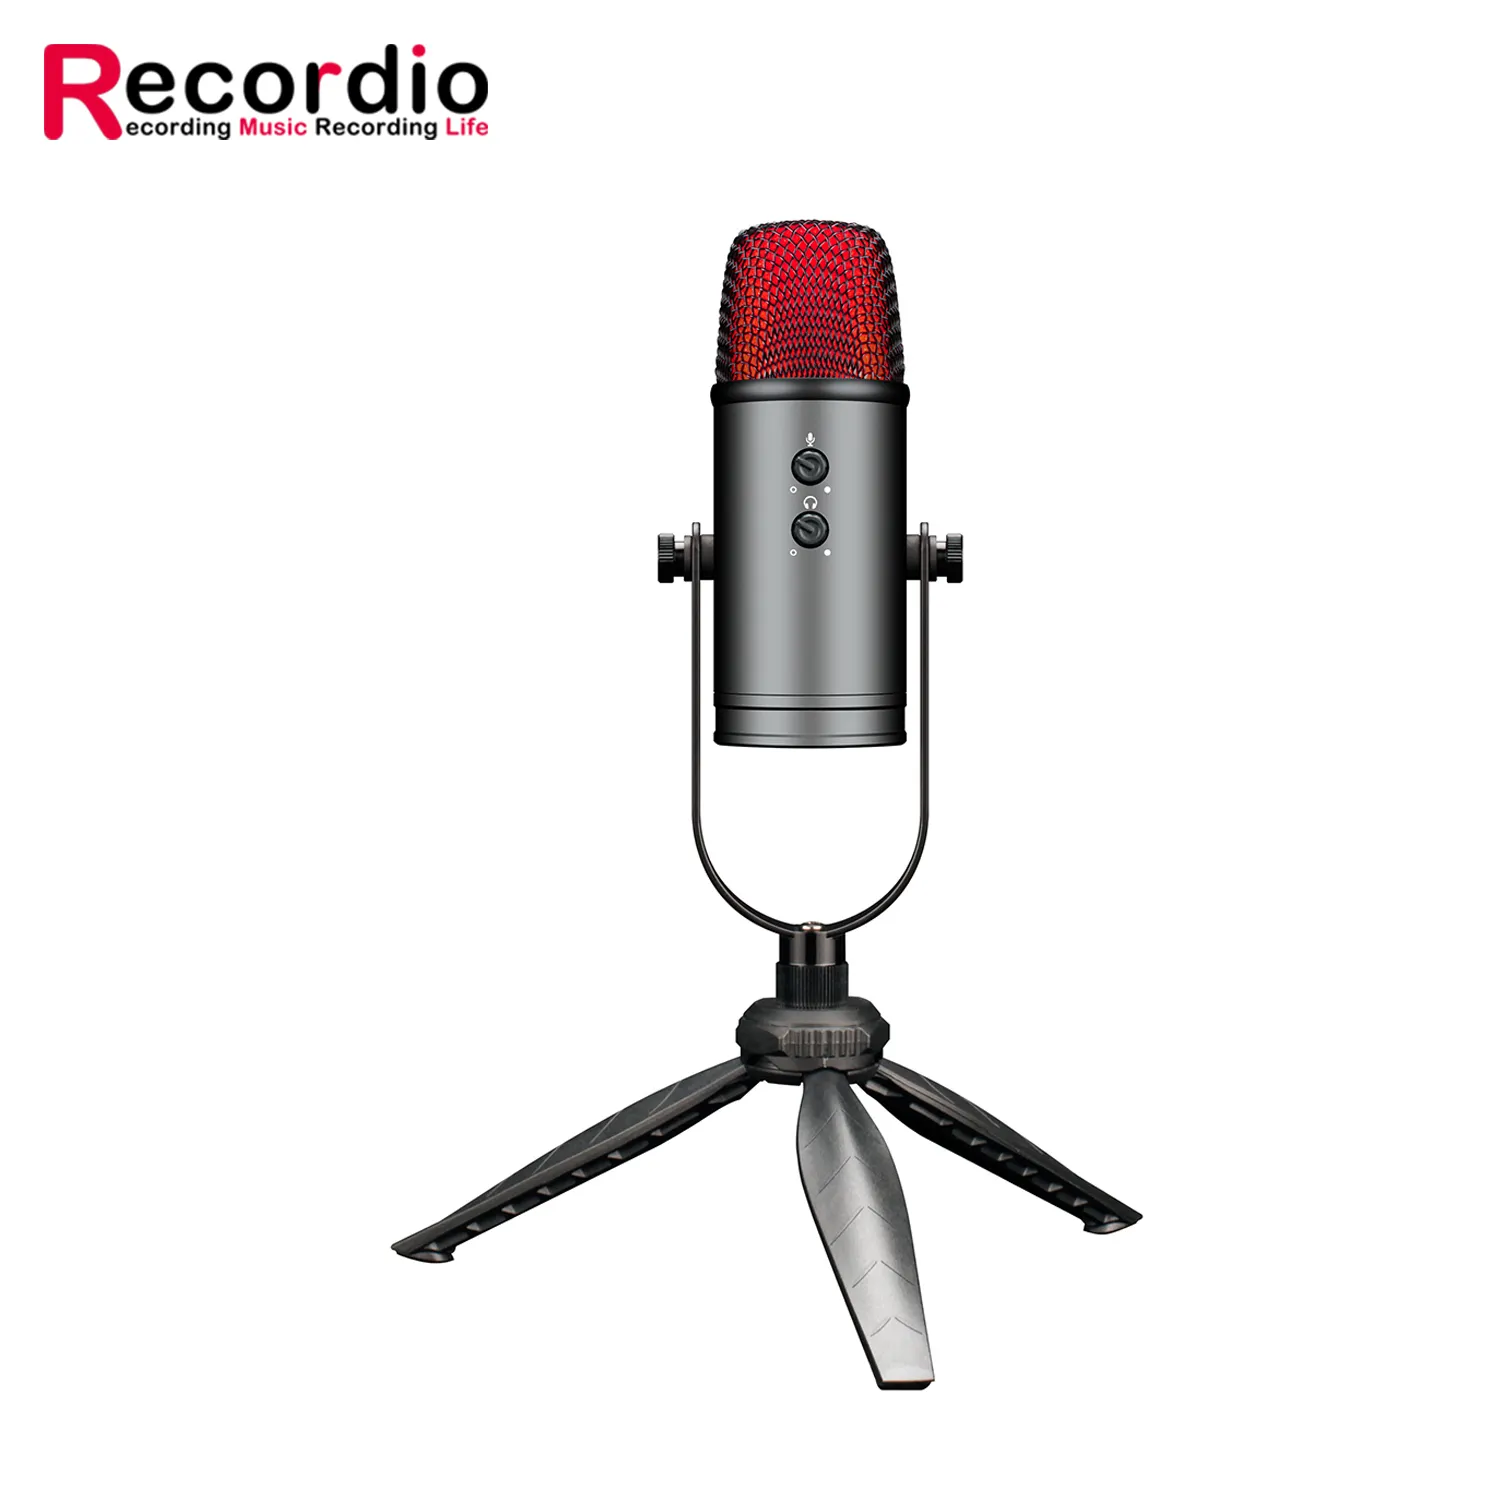 Equipo de estudio de grabación, micrófono de escritorio, micrófono de condensador de estudio para producción de música, grabación Vocal y Podcasting